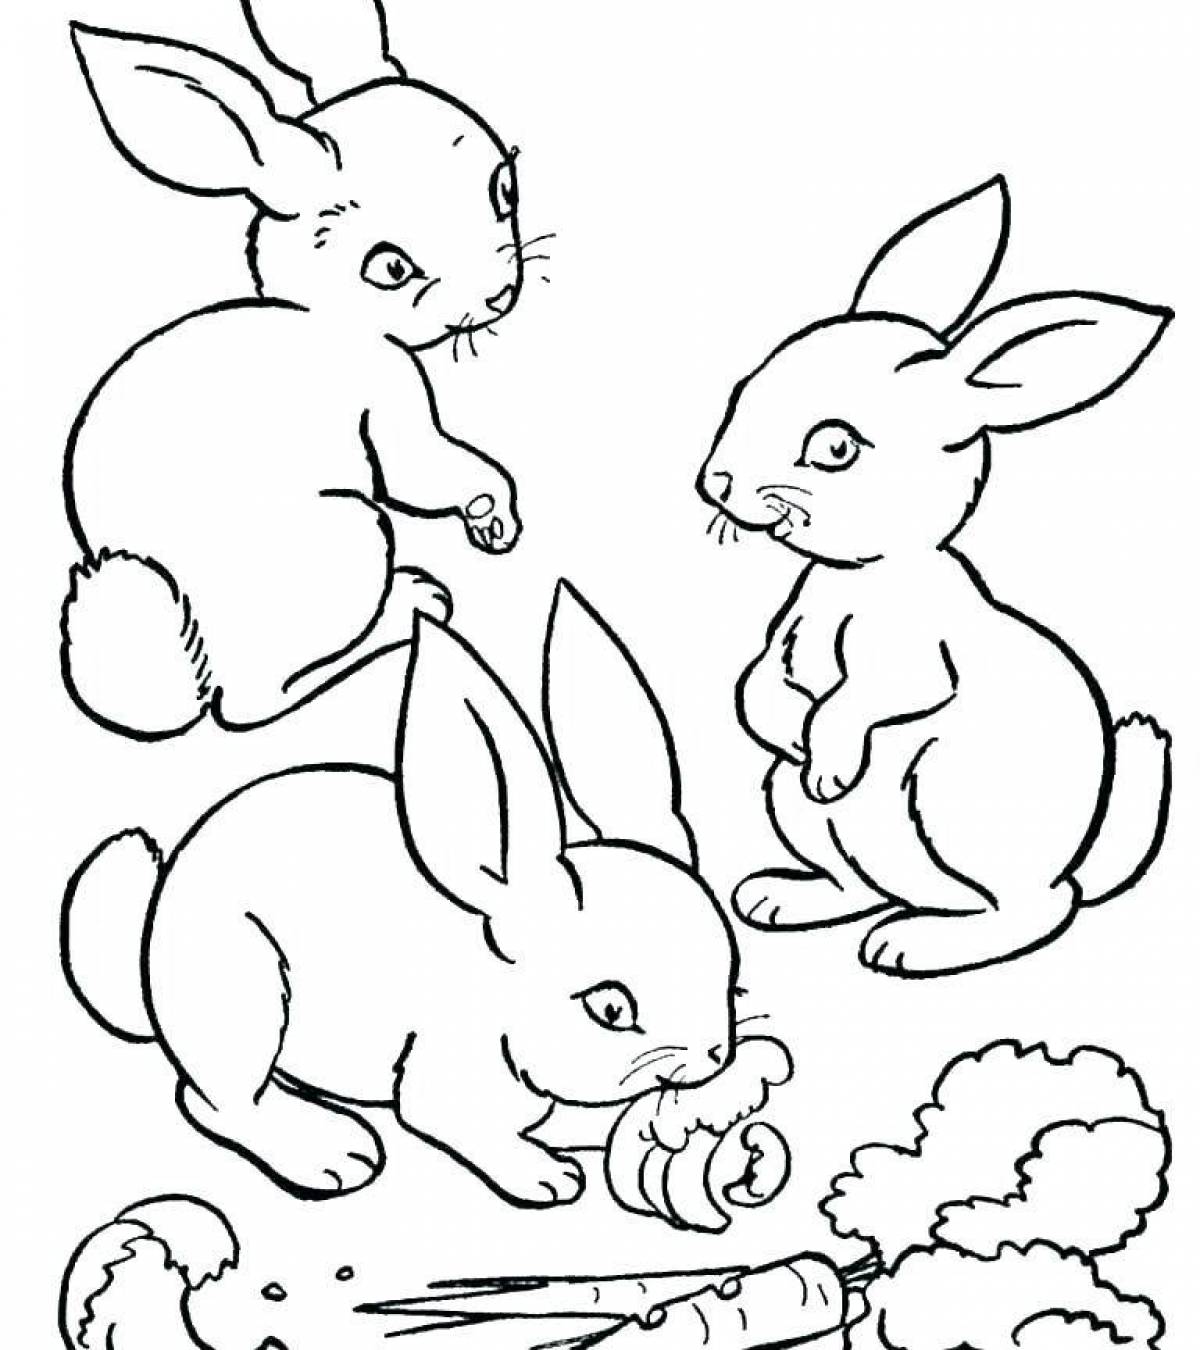 Потрясающая игра-раскраска с кроликом